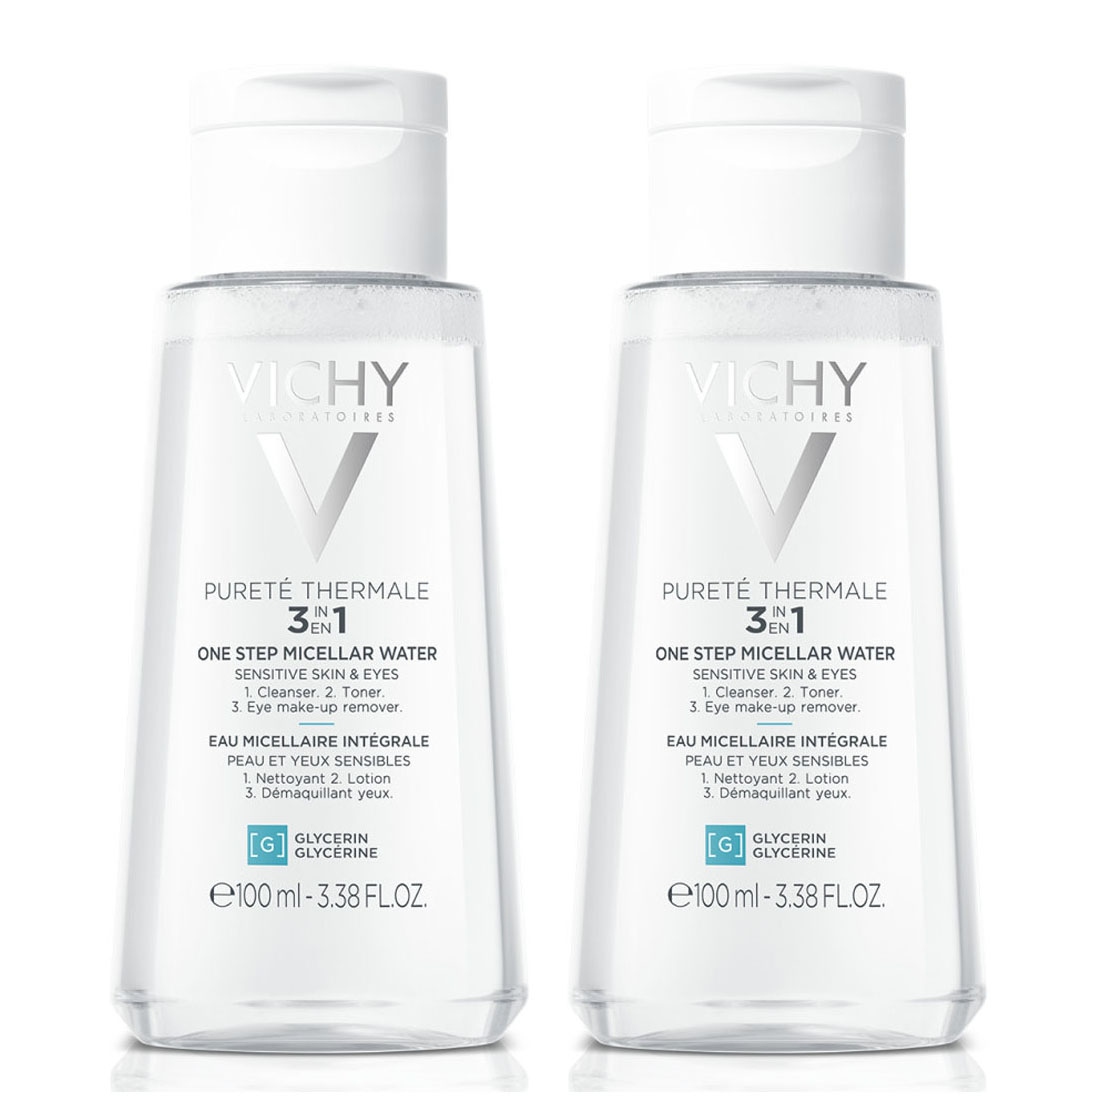 Vichy Мицеллярная вода универсальная для чувствительной кожи лица и вокруг глаз, 2 х 100 мл (Vichy, Purete Thermal)